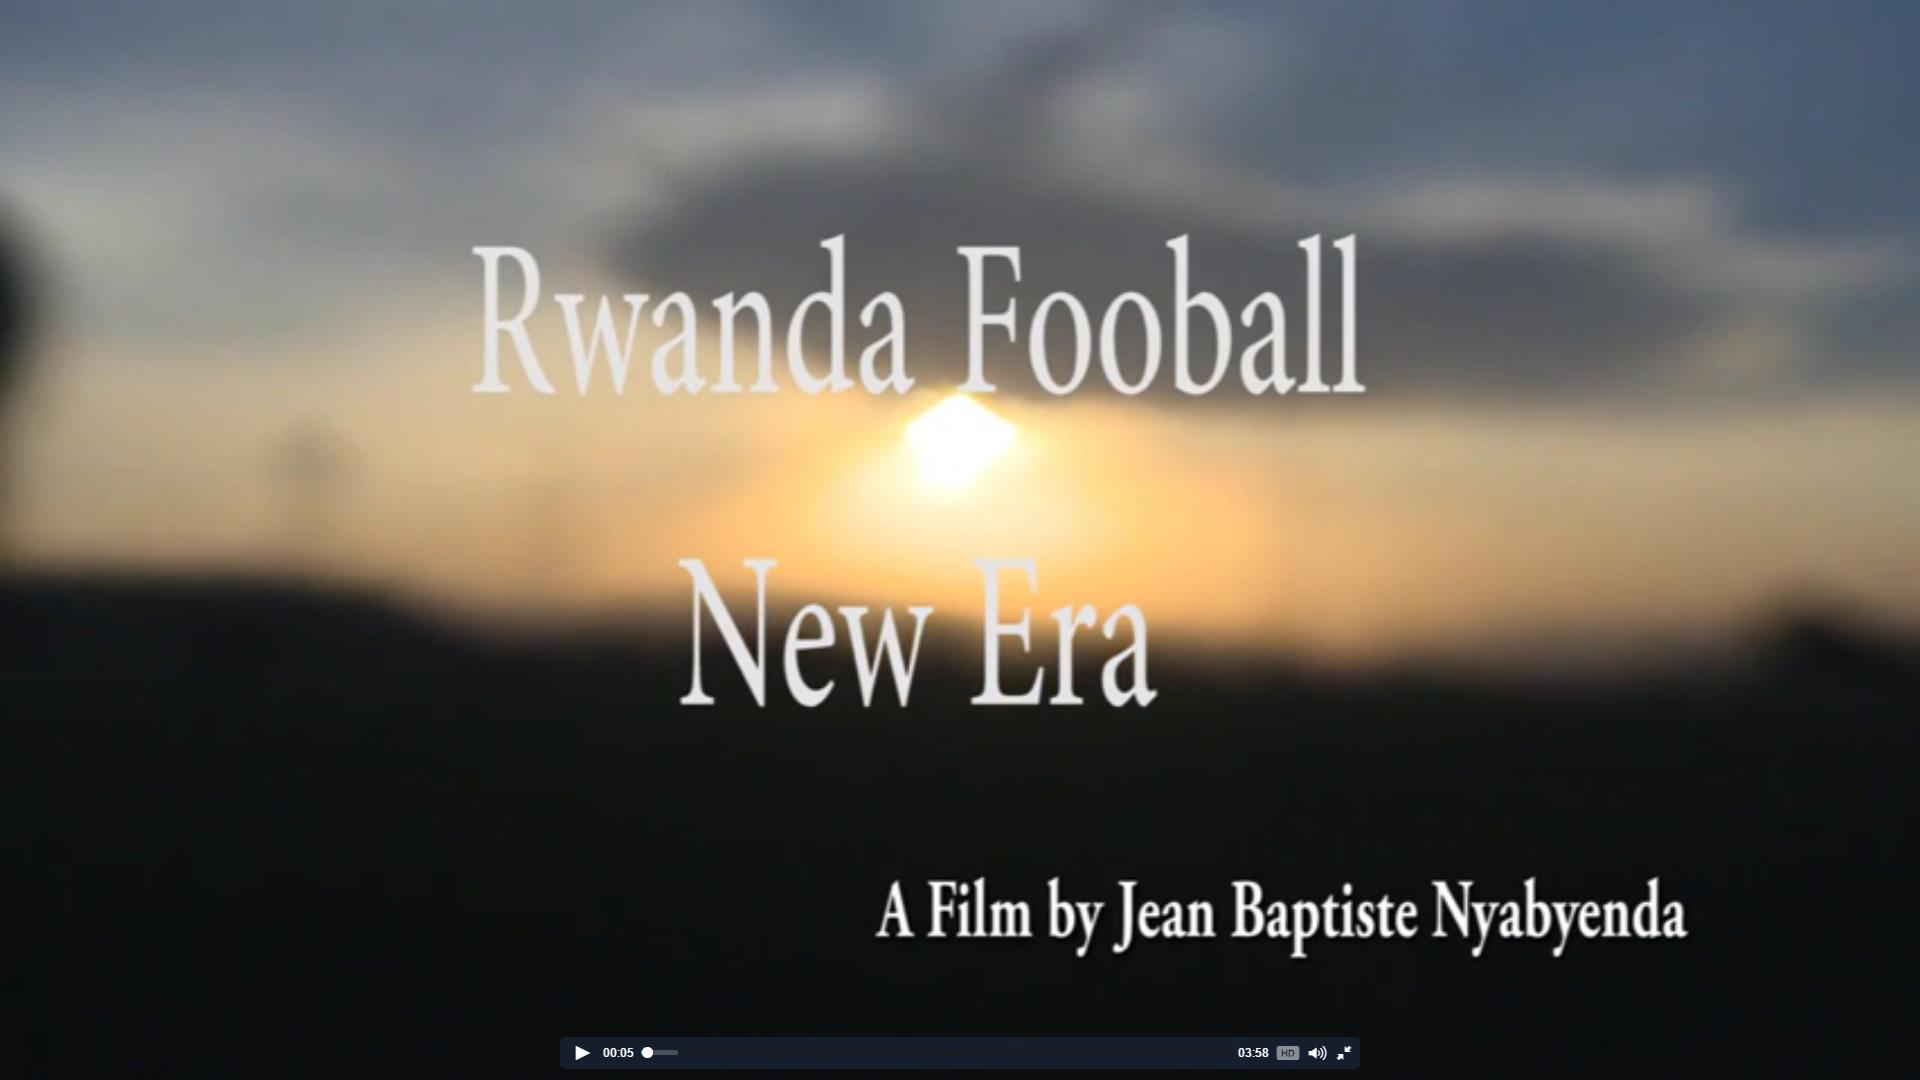 卢旺达橄榄球的新时代